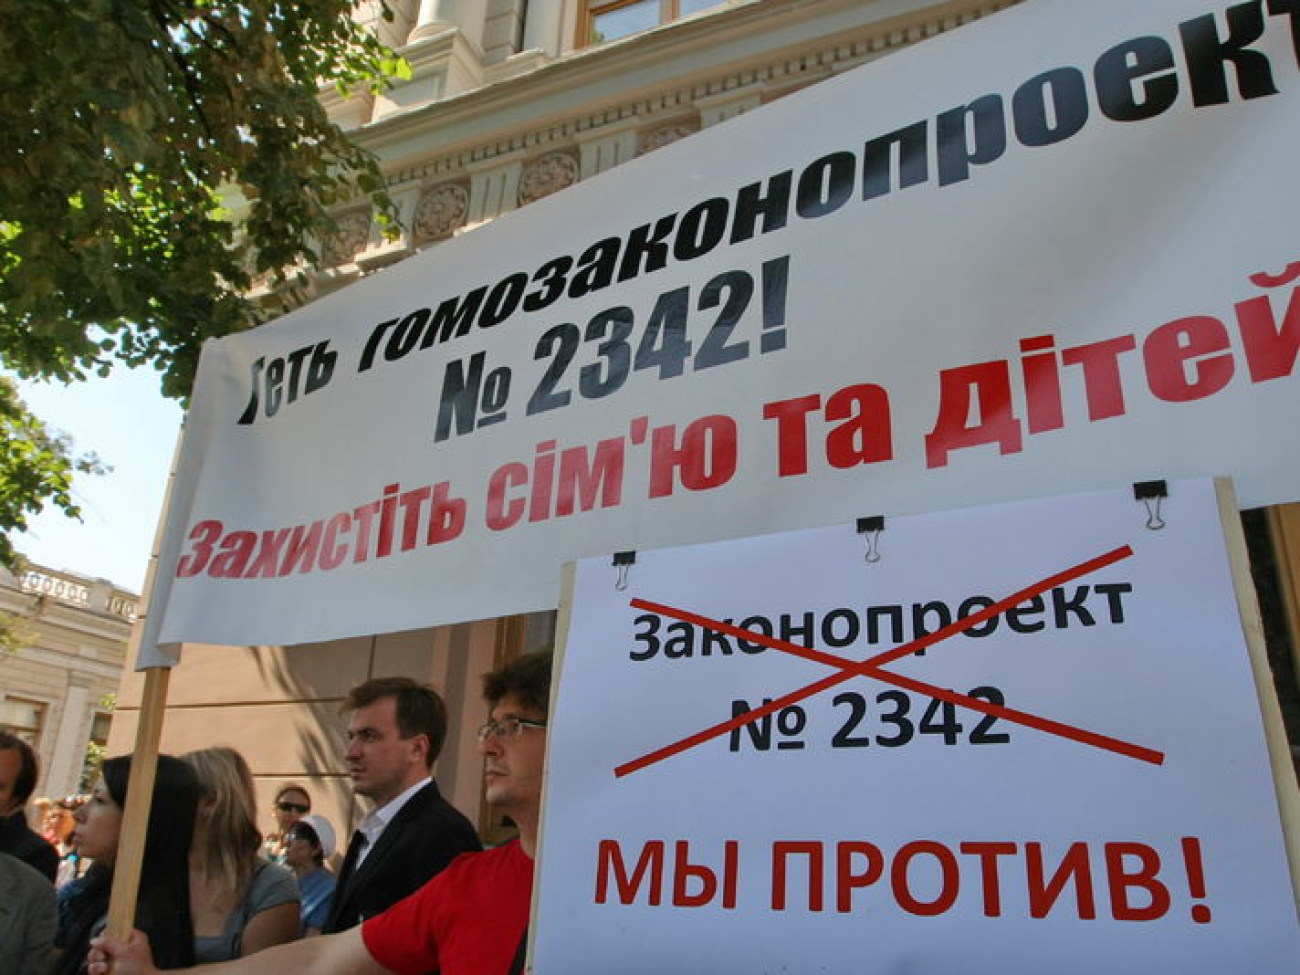 От депутатов требуют не узаконивать гомосексуализм, 2 июля 2013г.